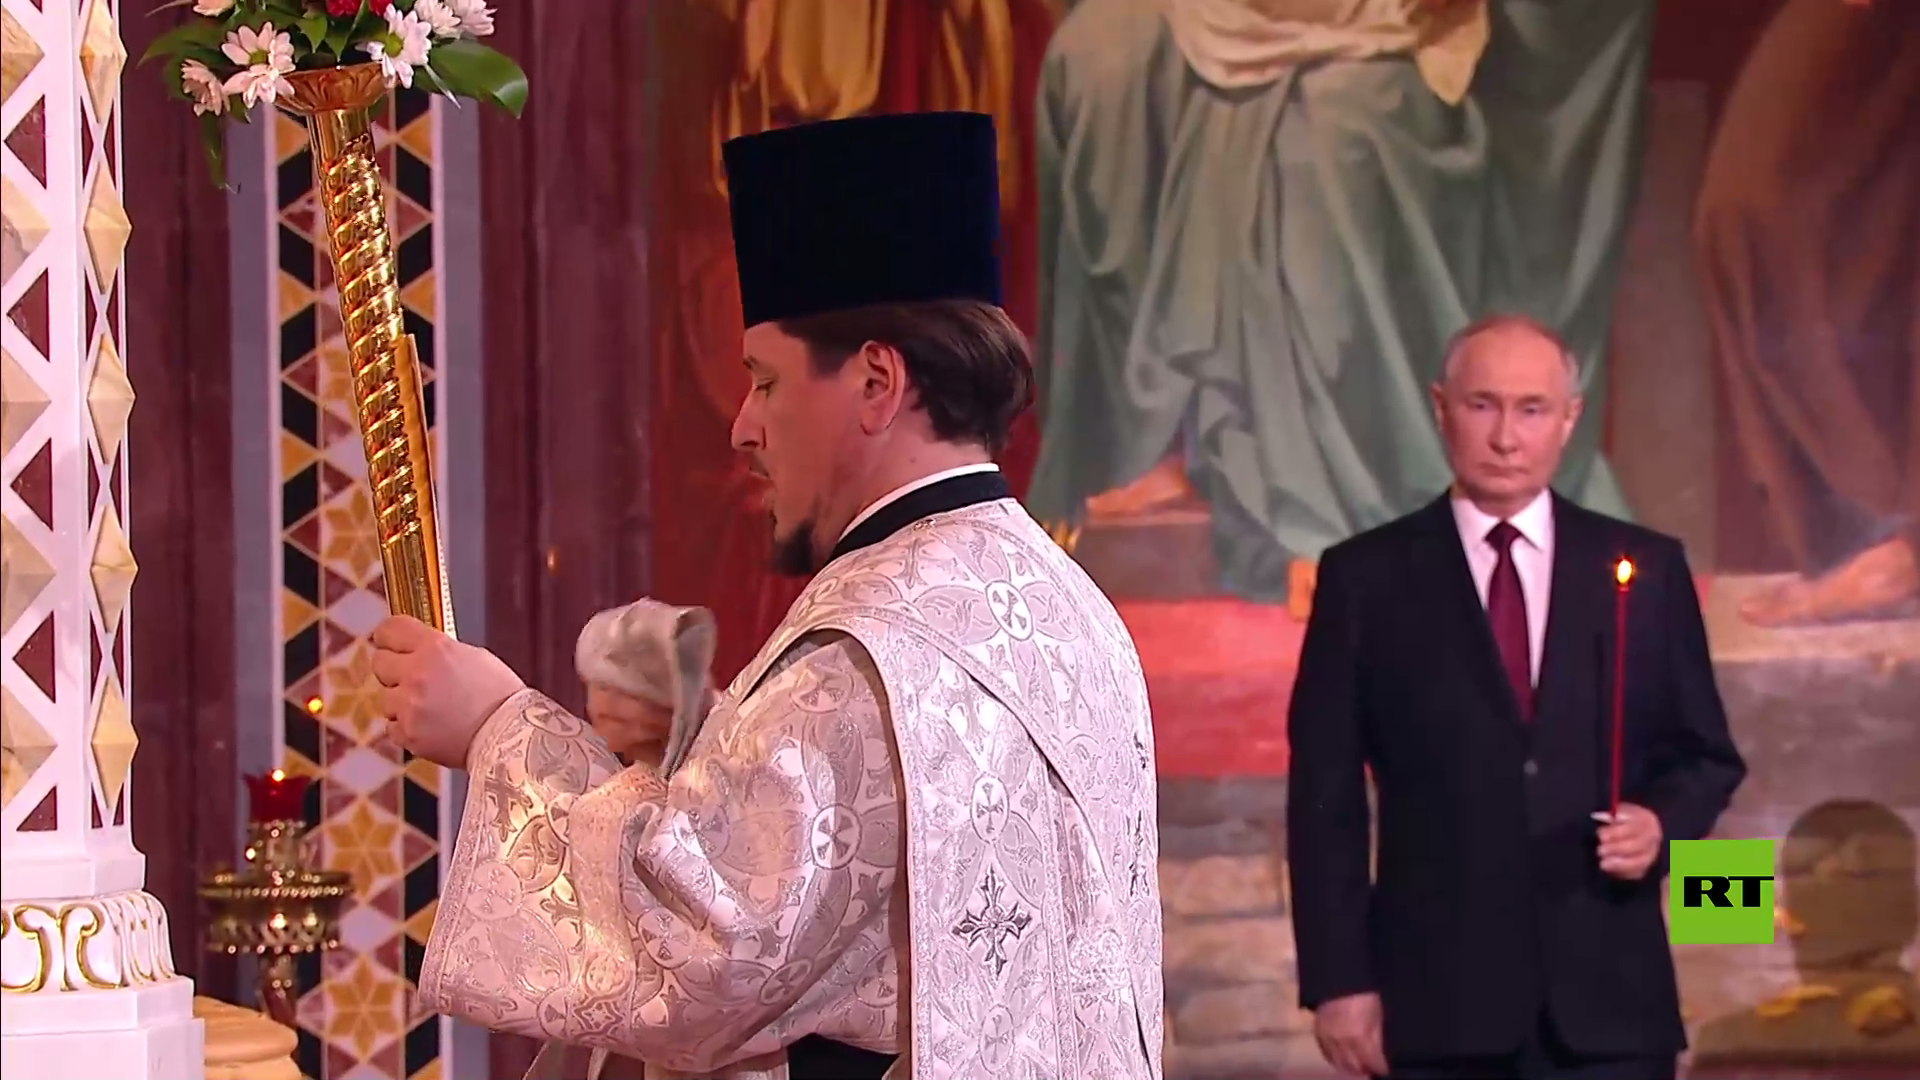 بالفيديو.. الرئيس بوتين يحضر قداس عيد الفصح في كاتدرائية المسيح المخلص في موسكو